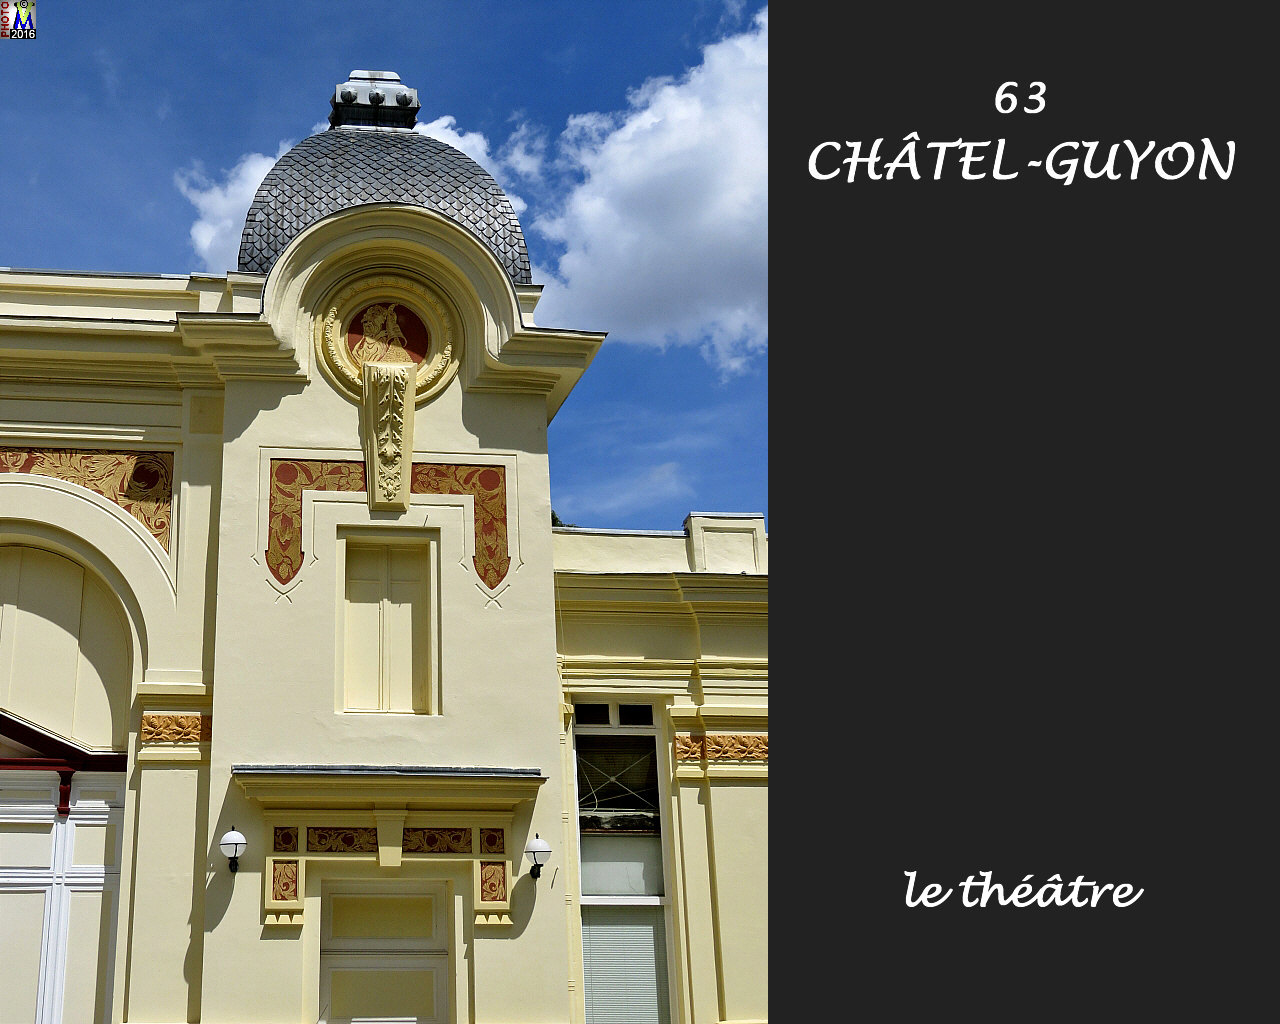 63CHATEL-GUYON_theatre_112.jpg